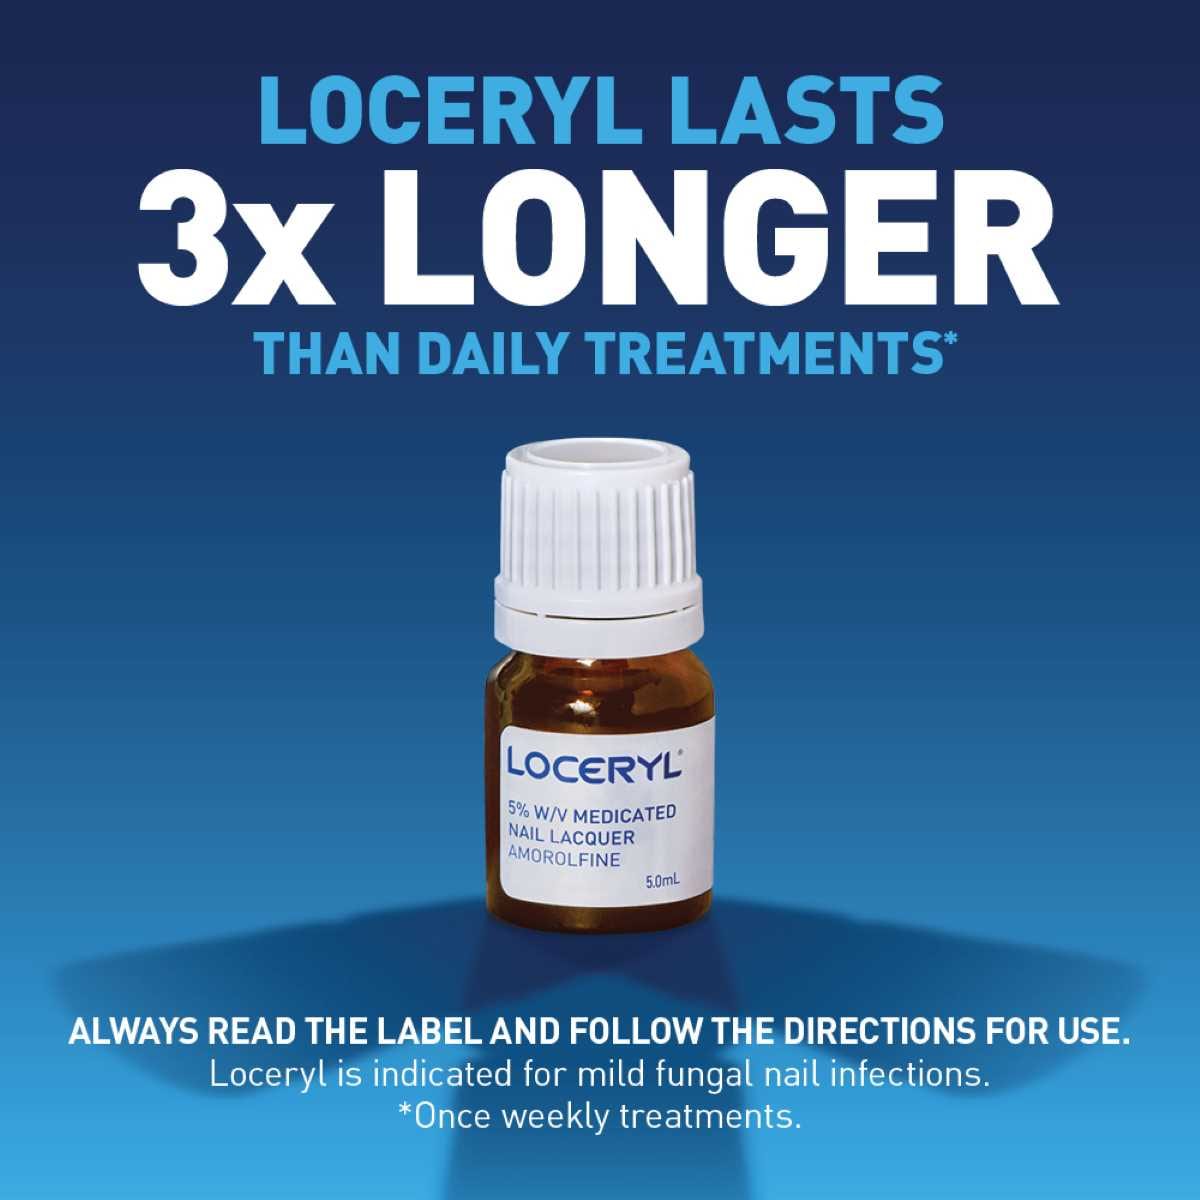 Loceryl Anti-Fungal Nail Lacquer Treatment Kit 5ml